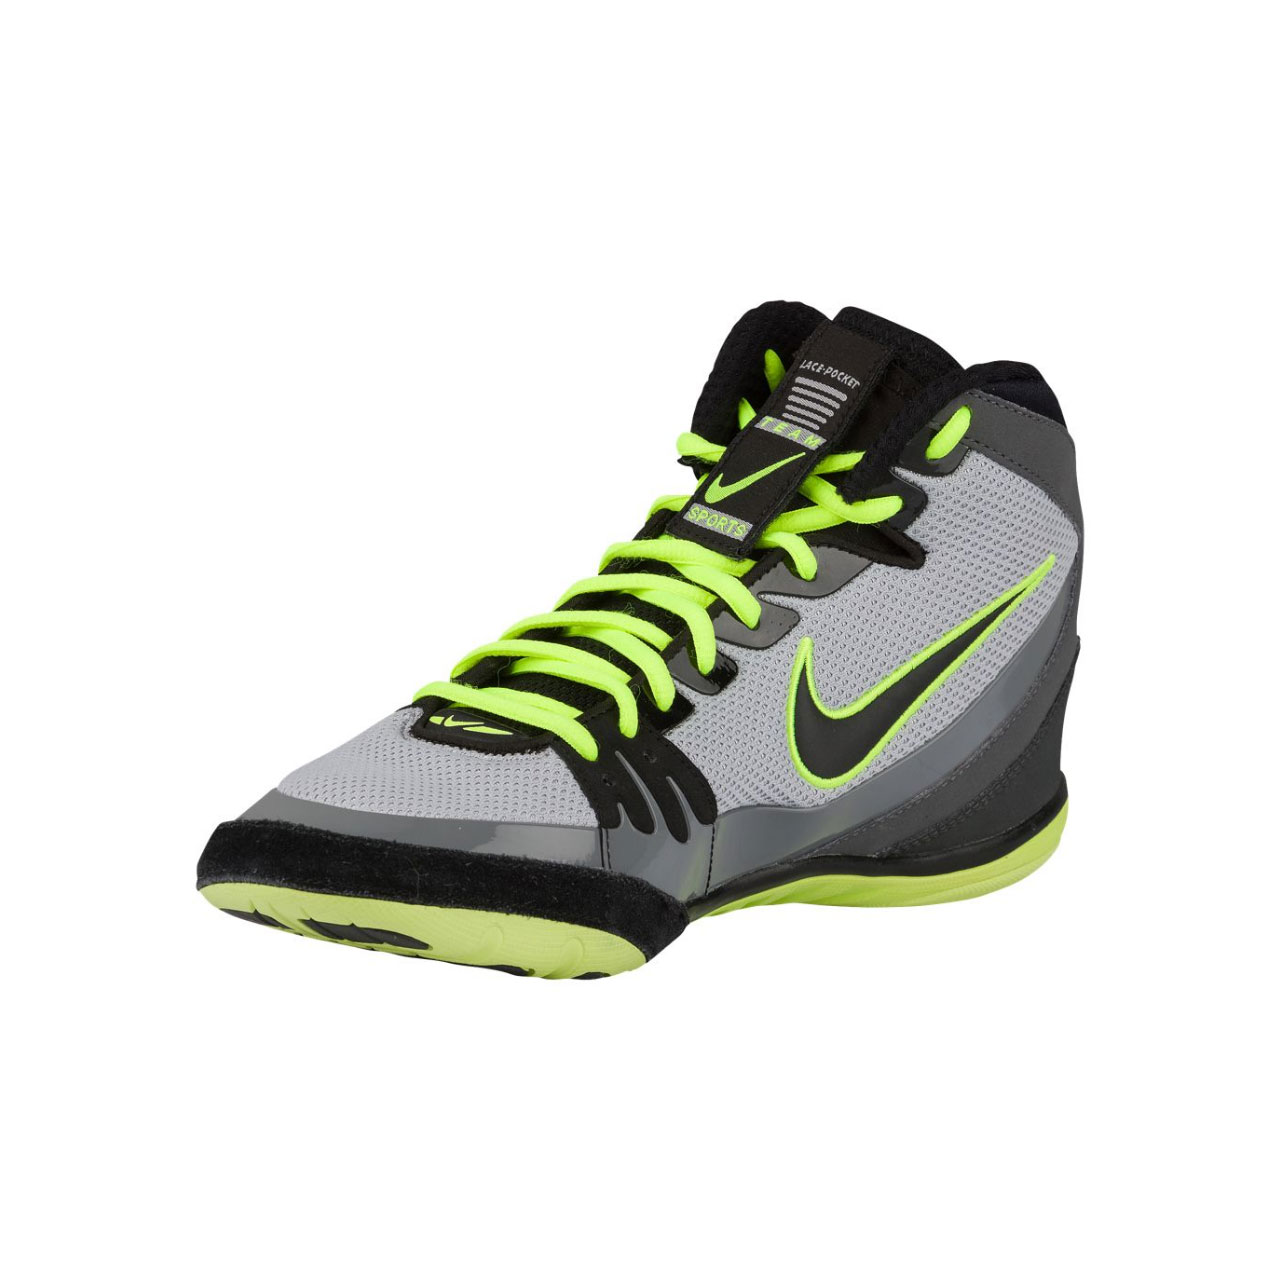  Nike Freek 316403-007 